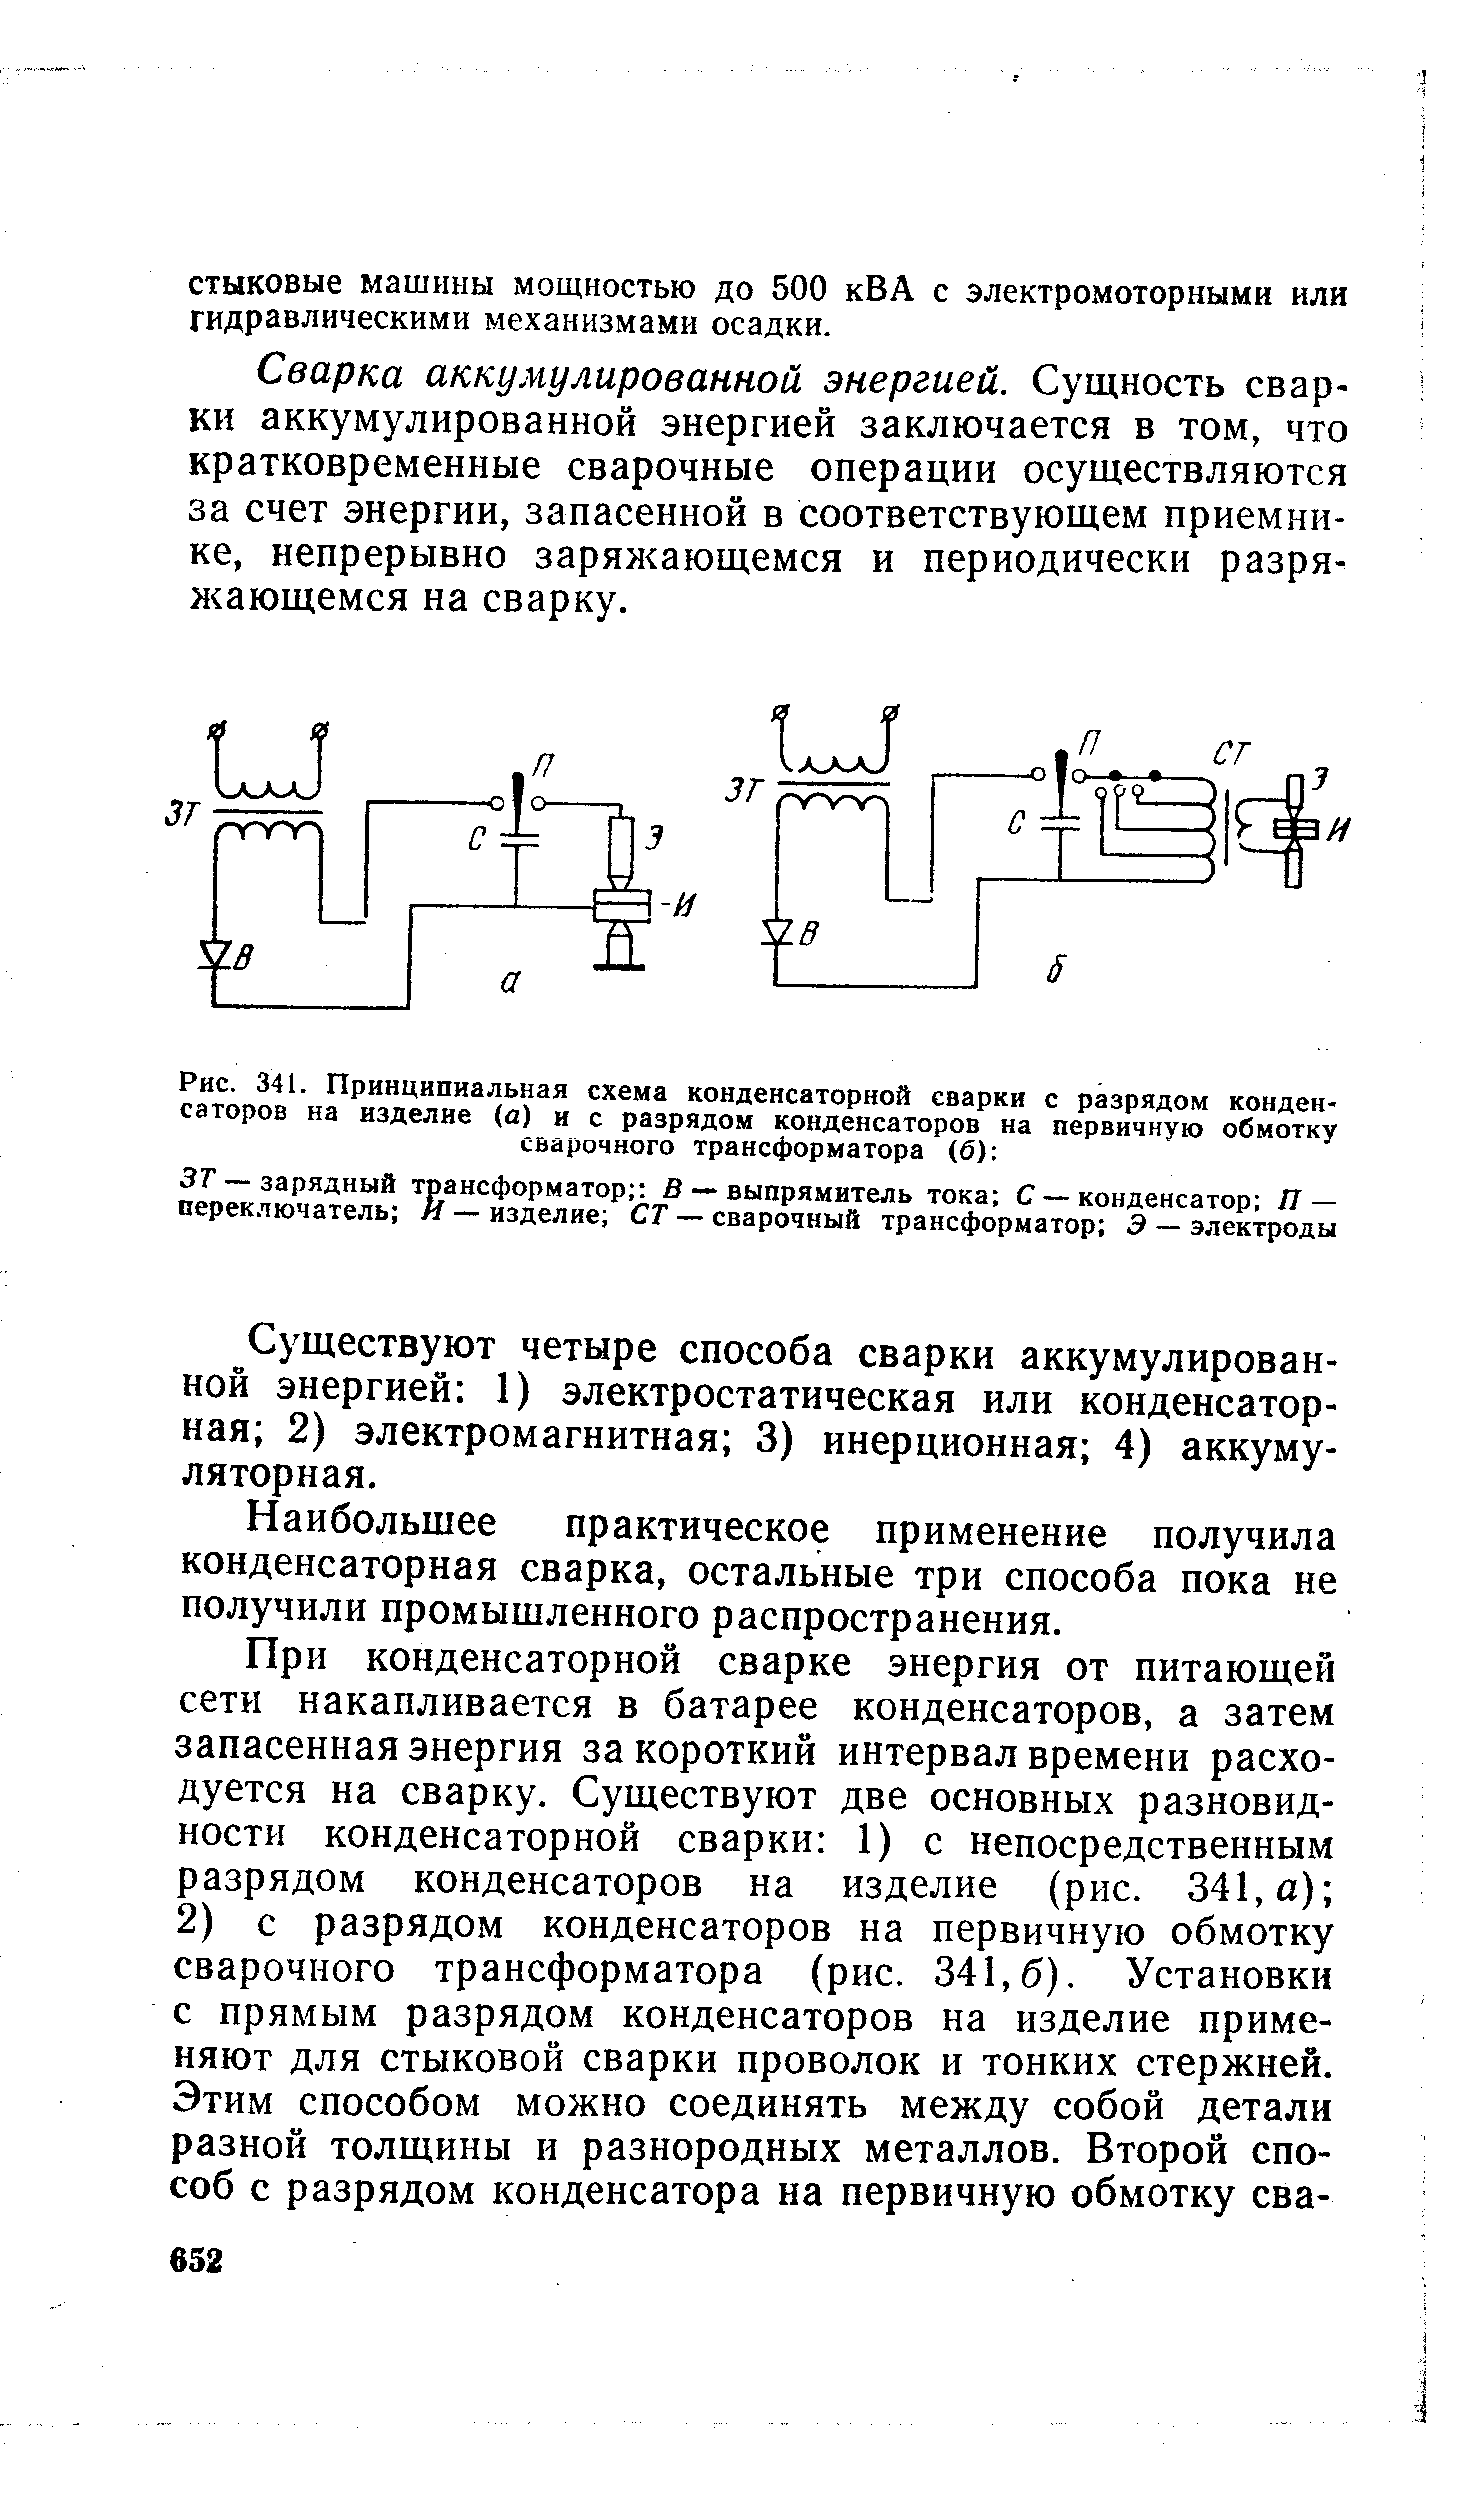 Рис. 341. Принципиальная схема конденсаторной сварки с разрядом конденсаторов на изделие (а) и с разрядом конденсаторов на первичную обмотку сварочного трансформатора (б) 
